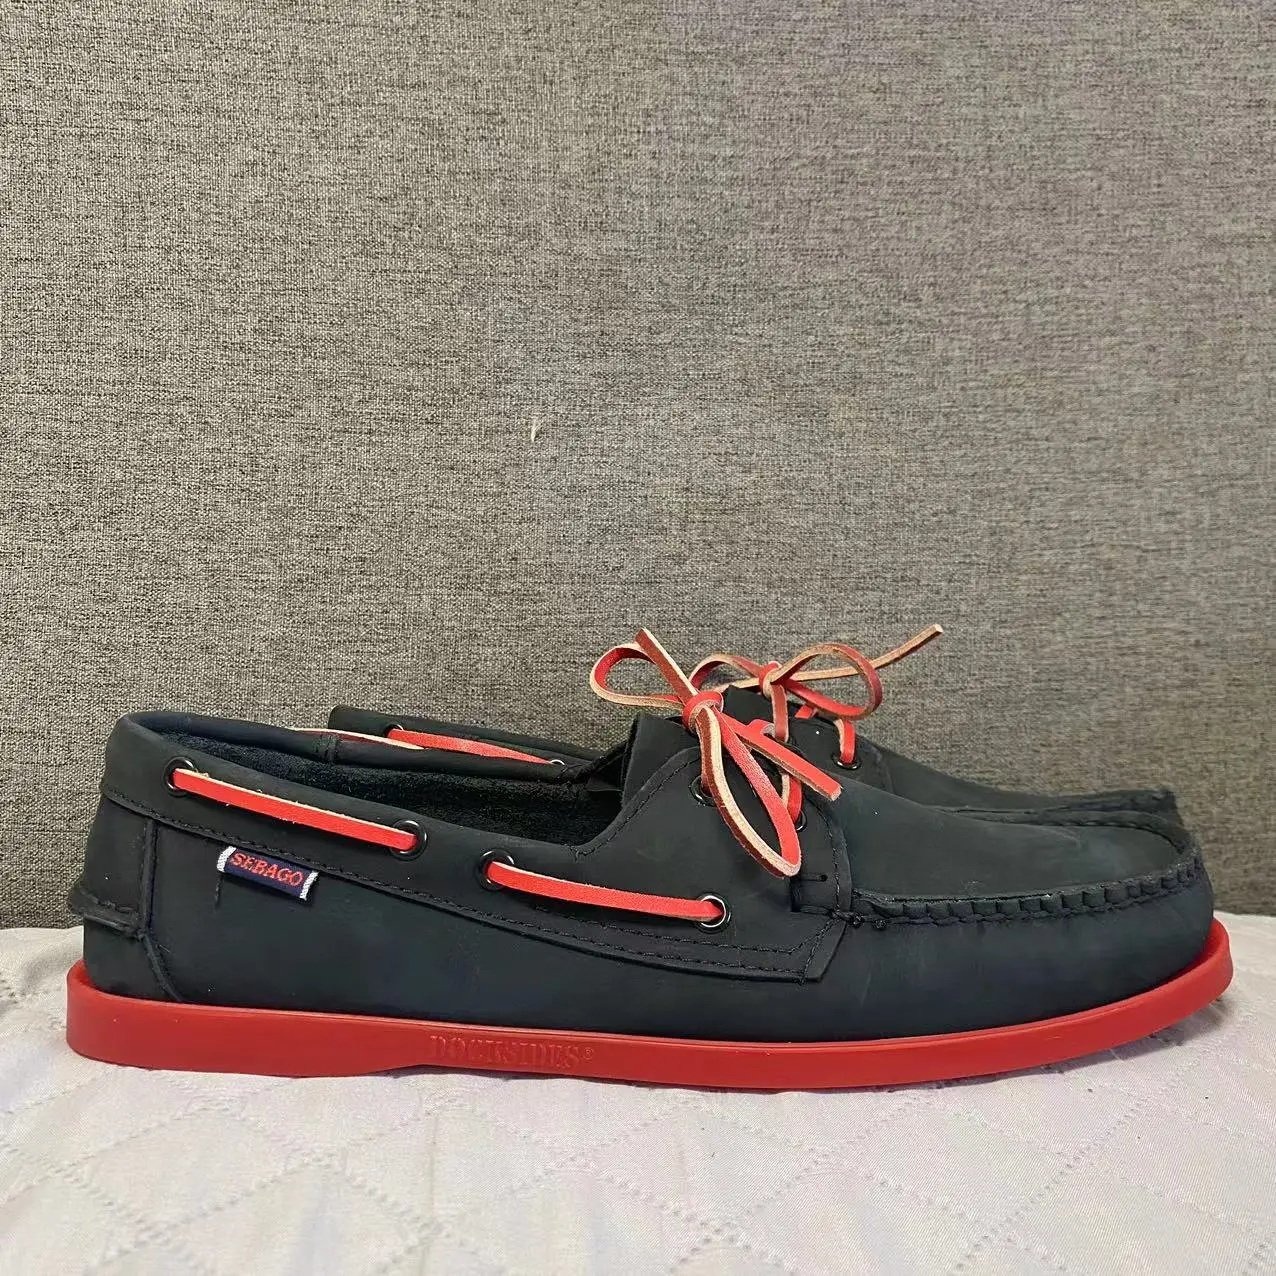 

Sebago Men Homme Authentic Docksides Shoes - Premium Suede Leather Moc Toe Lace Up Boat Shoes 075A